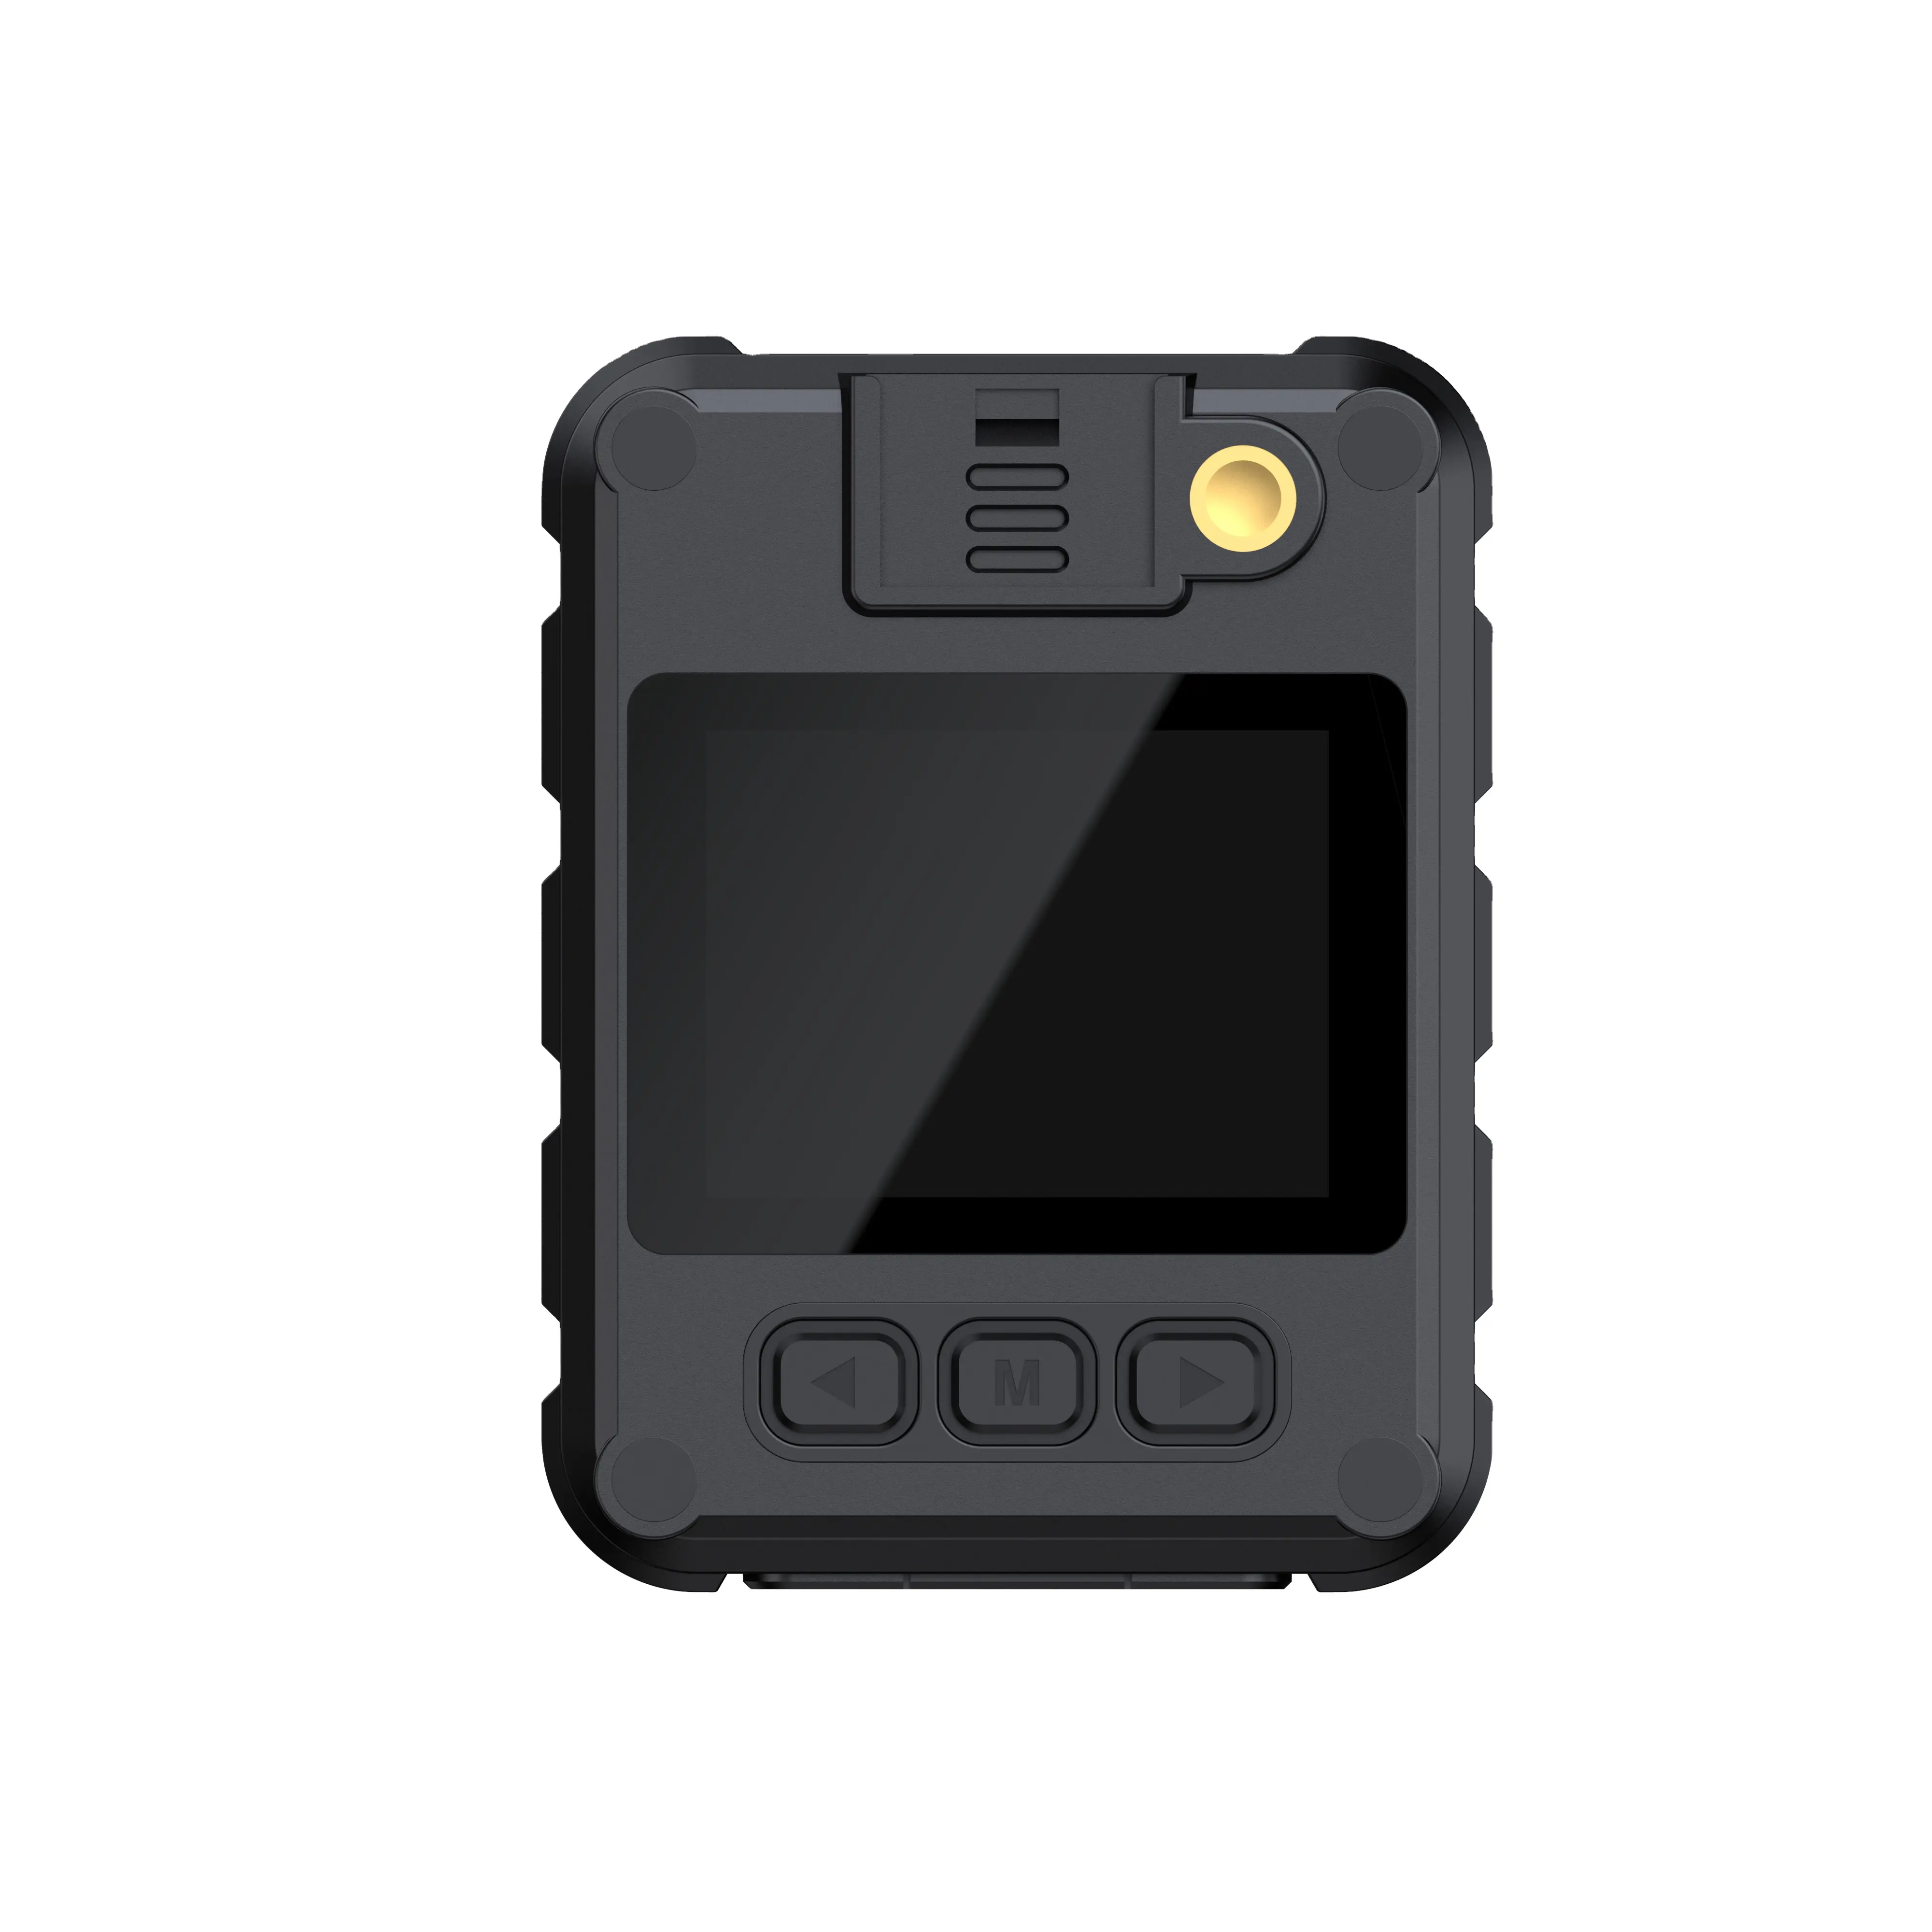 كاميرا سيارة حديثة 2023 كاميرا داش صغيرة لتنظيم أدوات السيارات وتسجيل الفيديو عن بعد مزودة بنظام تحديد المواقع العالمي GPS